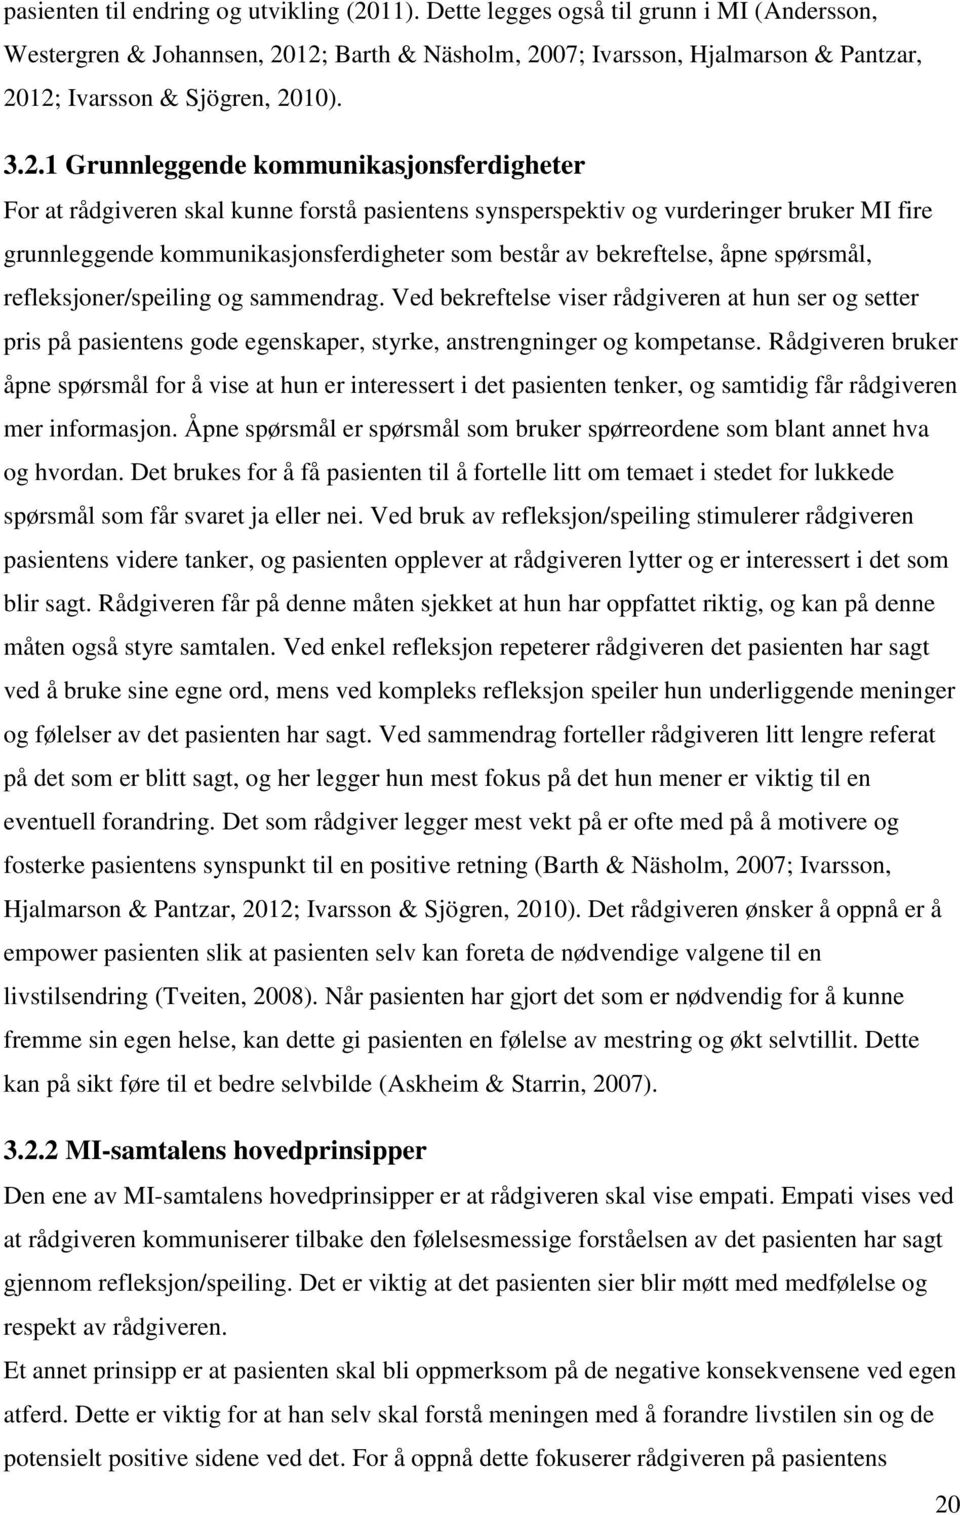 12; Barth & Näsholm, 2007; Ivarsson, Hjalmarson & Pantzar, 2012; Ivarsson & Sjögren, 2010). 3.2.1 Grunnleggende kommunikasjonsferdigheter For at rådgiveren skal kunne forstå pasientens synsperspektiv